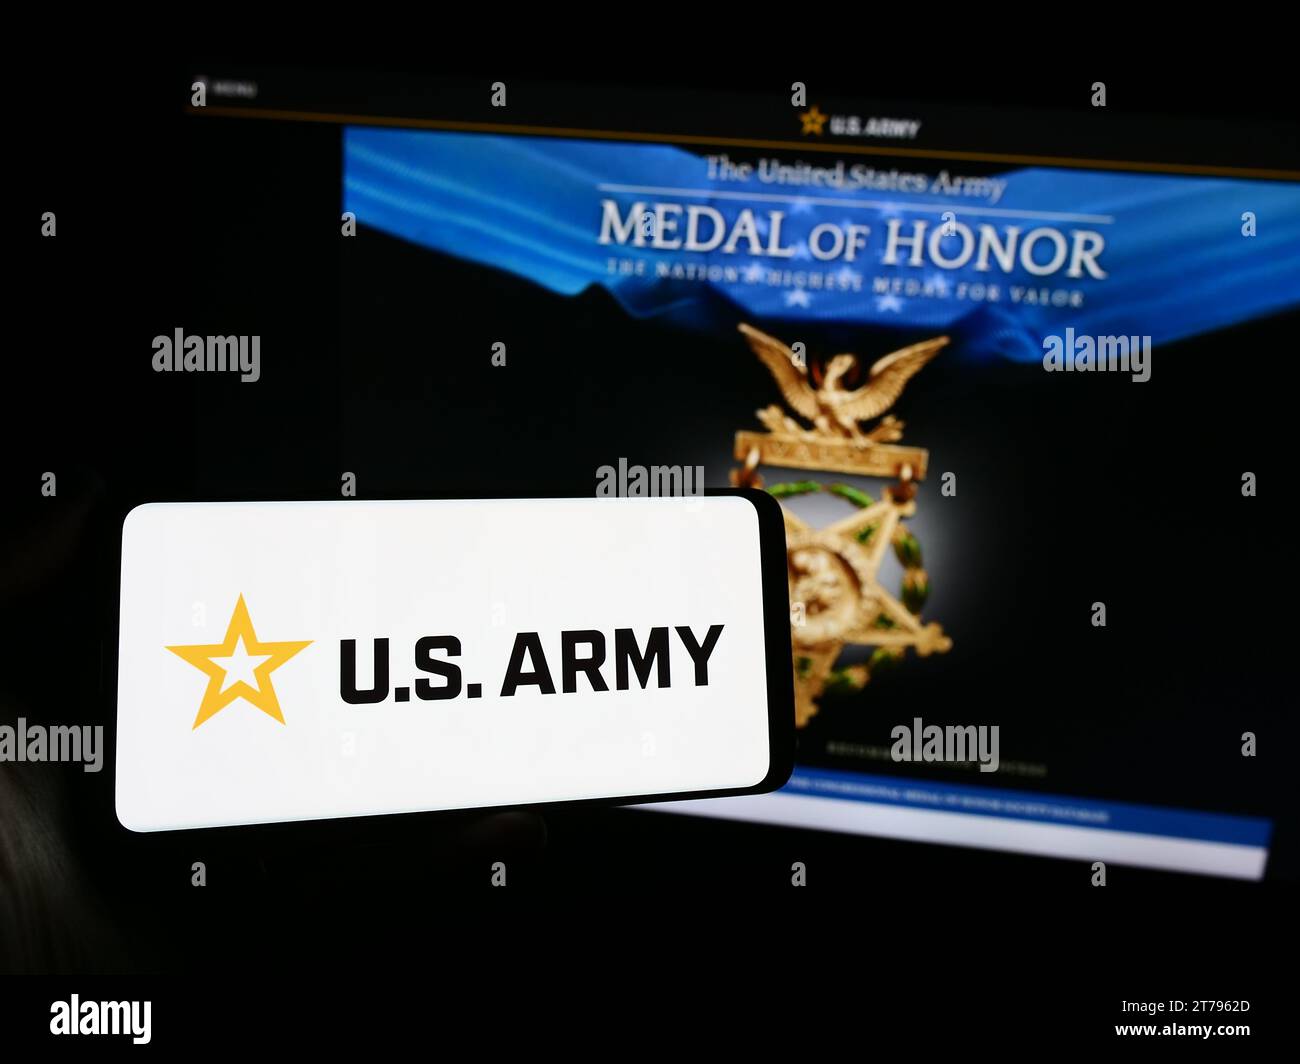 Persona che possiede uno smartphone con il logo dell'esercito degli Stati Uniti davanti al sito Web. Concentrarsi sul display del telefono. Foto Stock